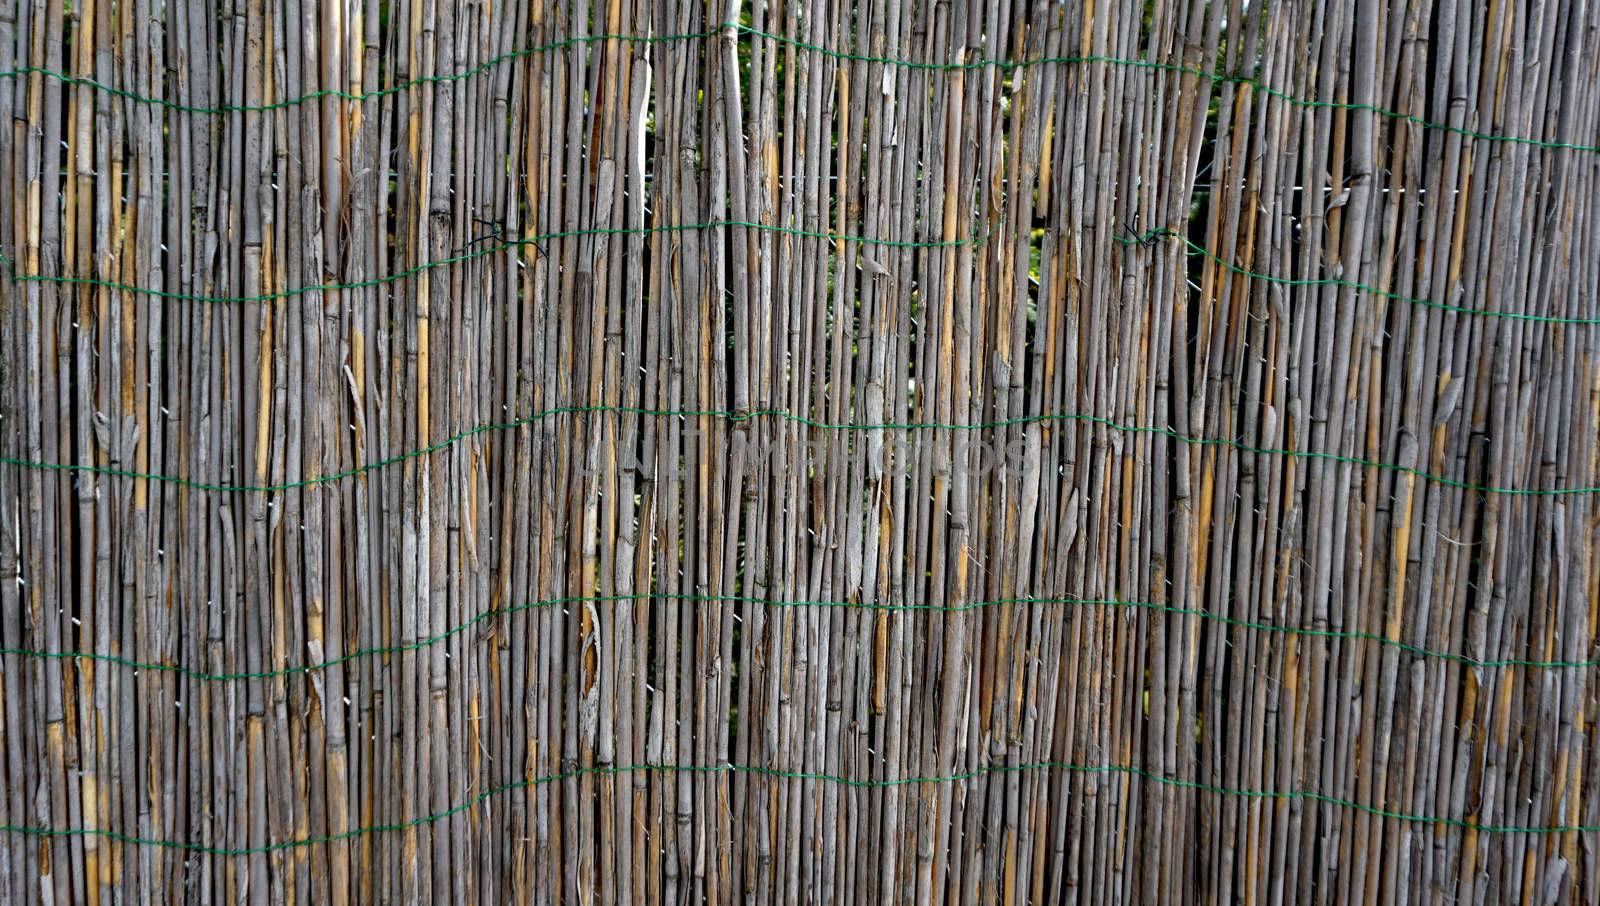 Bamboo wall fence horizontal by polarbearstudio